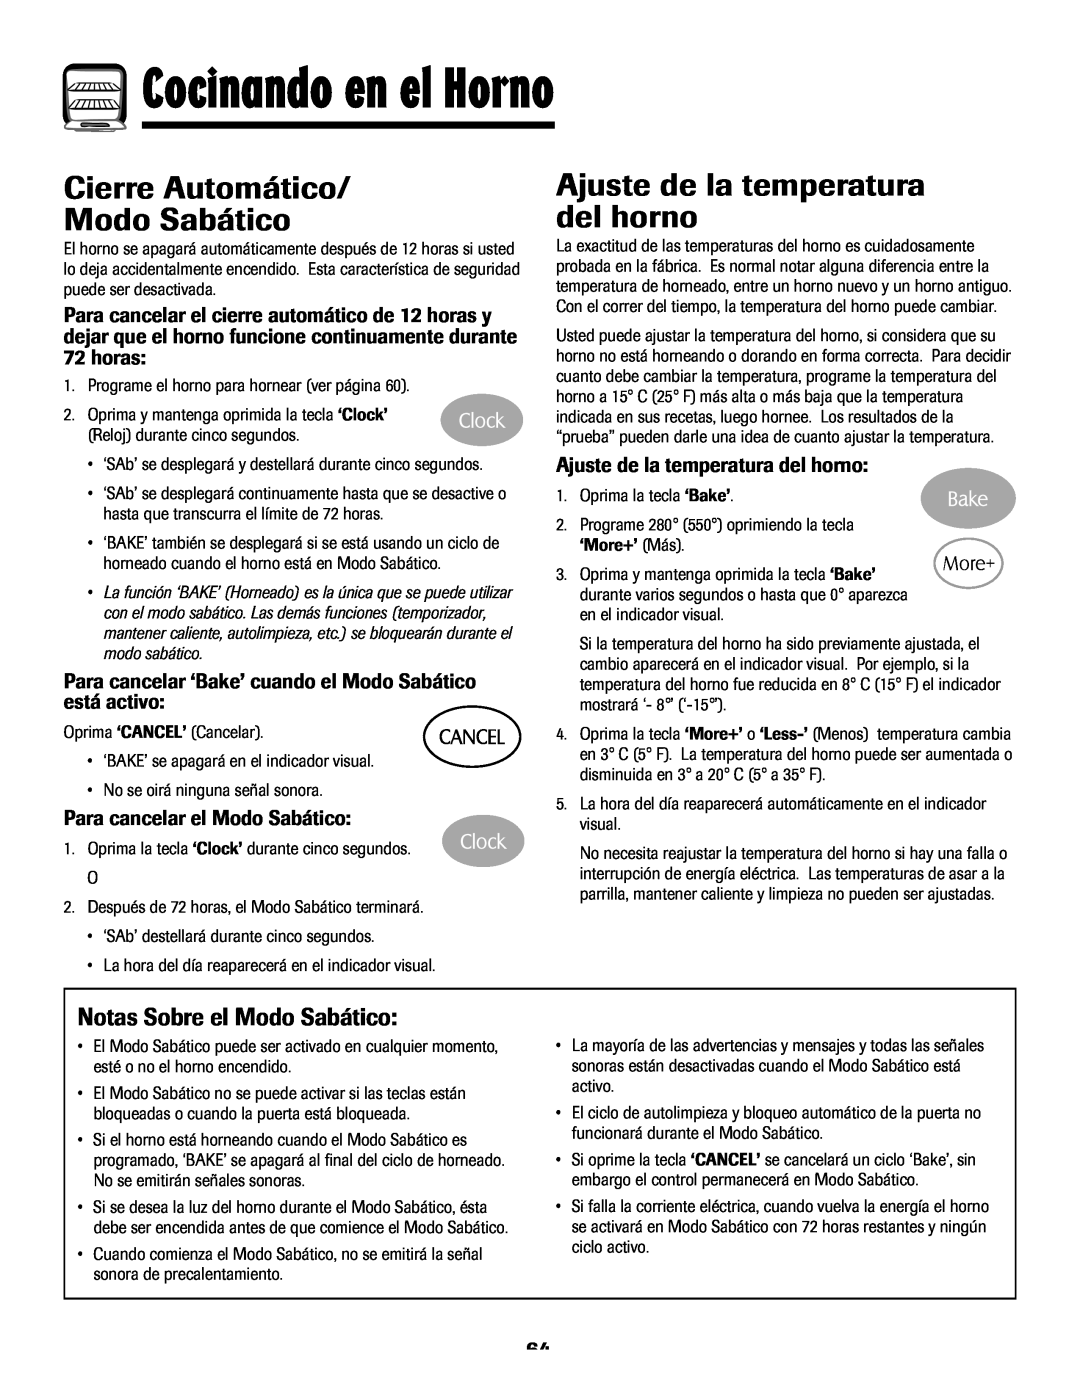 Maytag 8113P768-60 manual Cierre Automático Modo Sabático, Ajuste de la temperatura del horno, Notas Sobre el Modo Sabático 